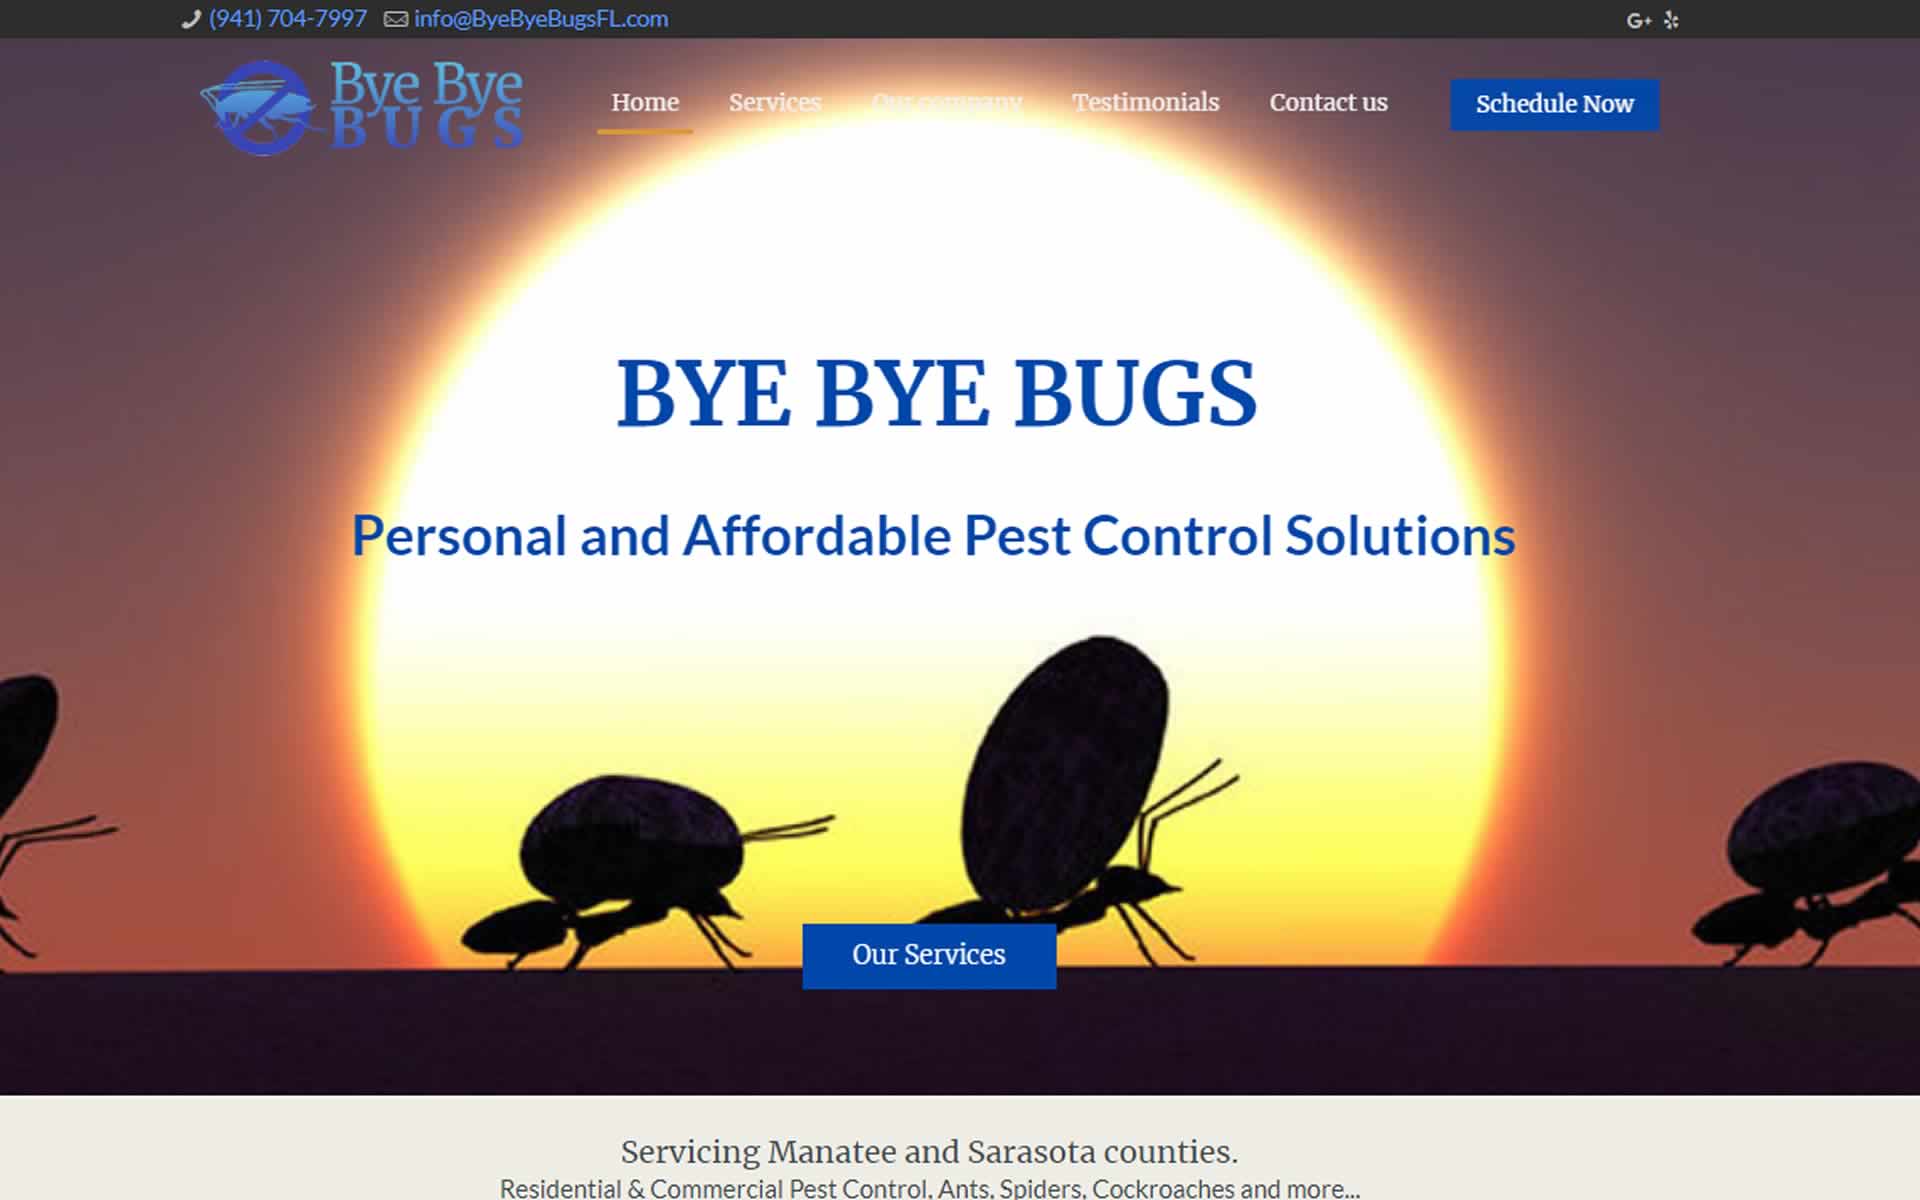 Bye Bye Bugs Pest Control